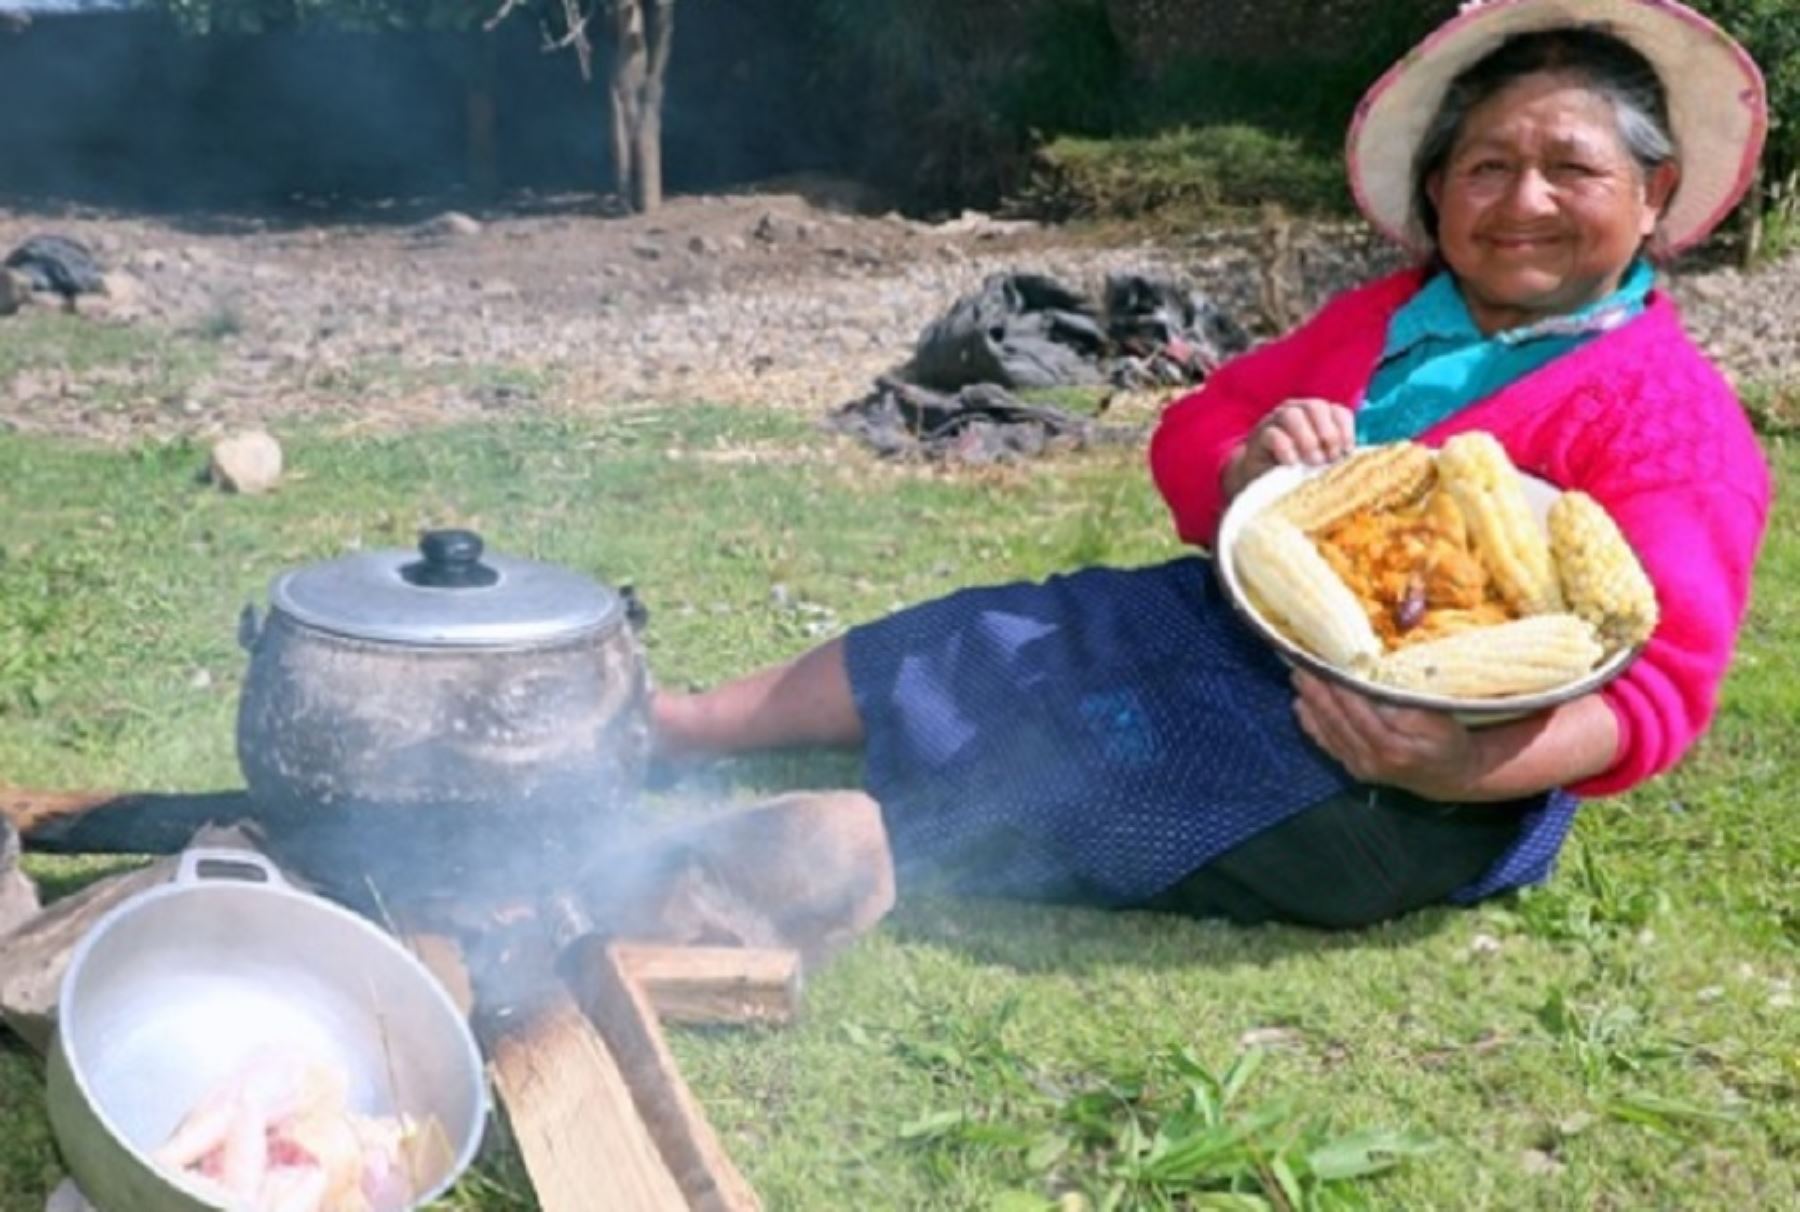 Los platos que cocina "La tía Lucinda”, como se le identifica a Lucinda Tacanga Mauricio, usuaria del programa social Pensión 65, en su canal de YouTube, llevan insumos propios de la zona y materiales de uso local, como el fogón y el batán.